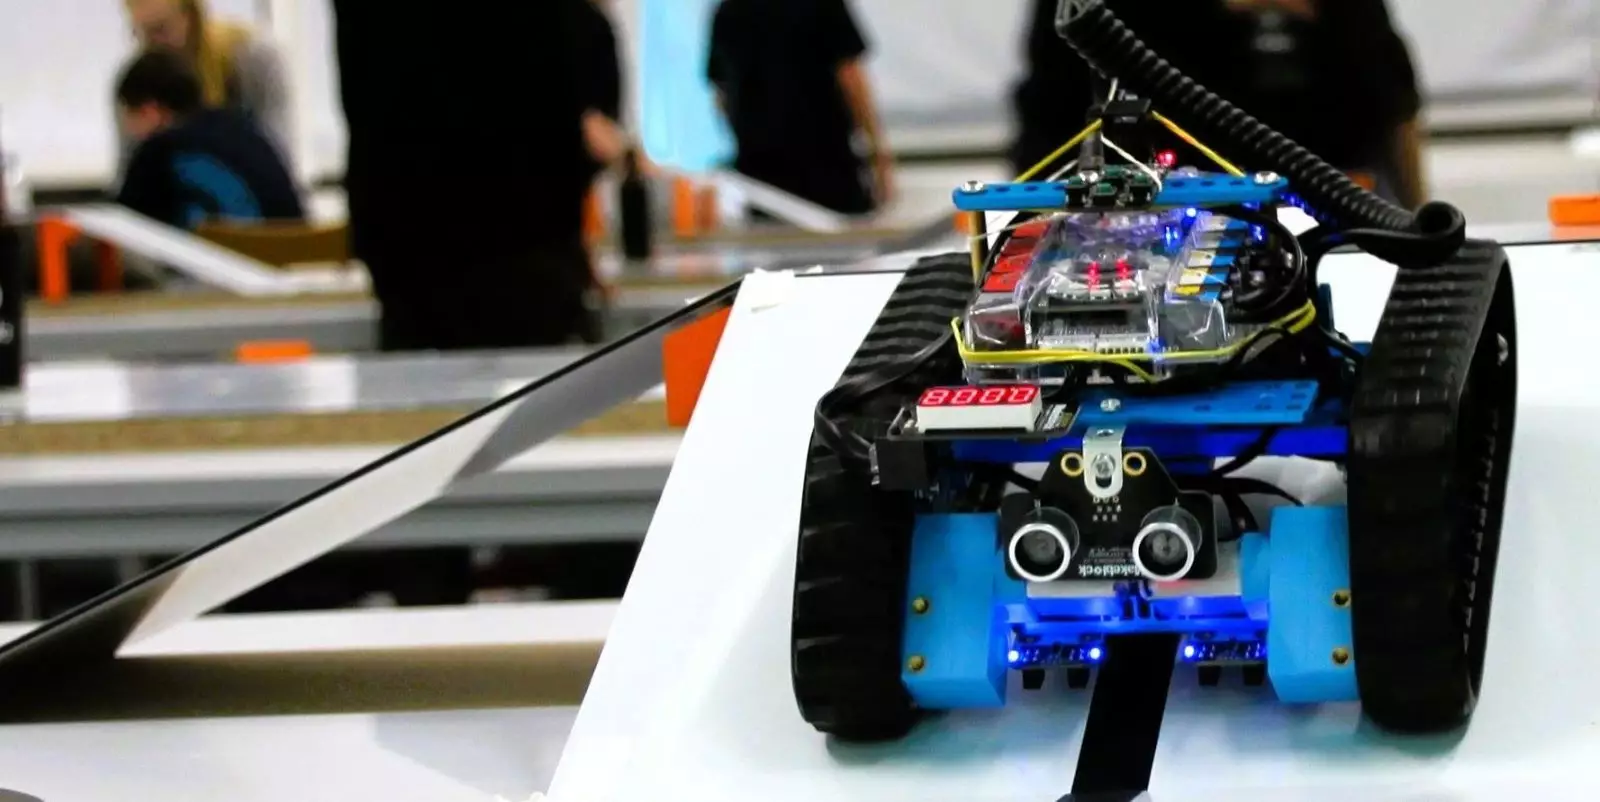 In Wettbewerben müssen die kleinen Roboter selbständig Hindernisse umfahren. Foto: TU Hamburg